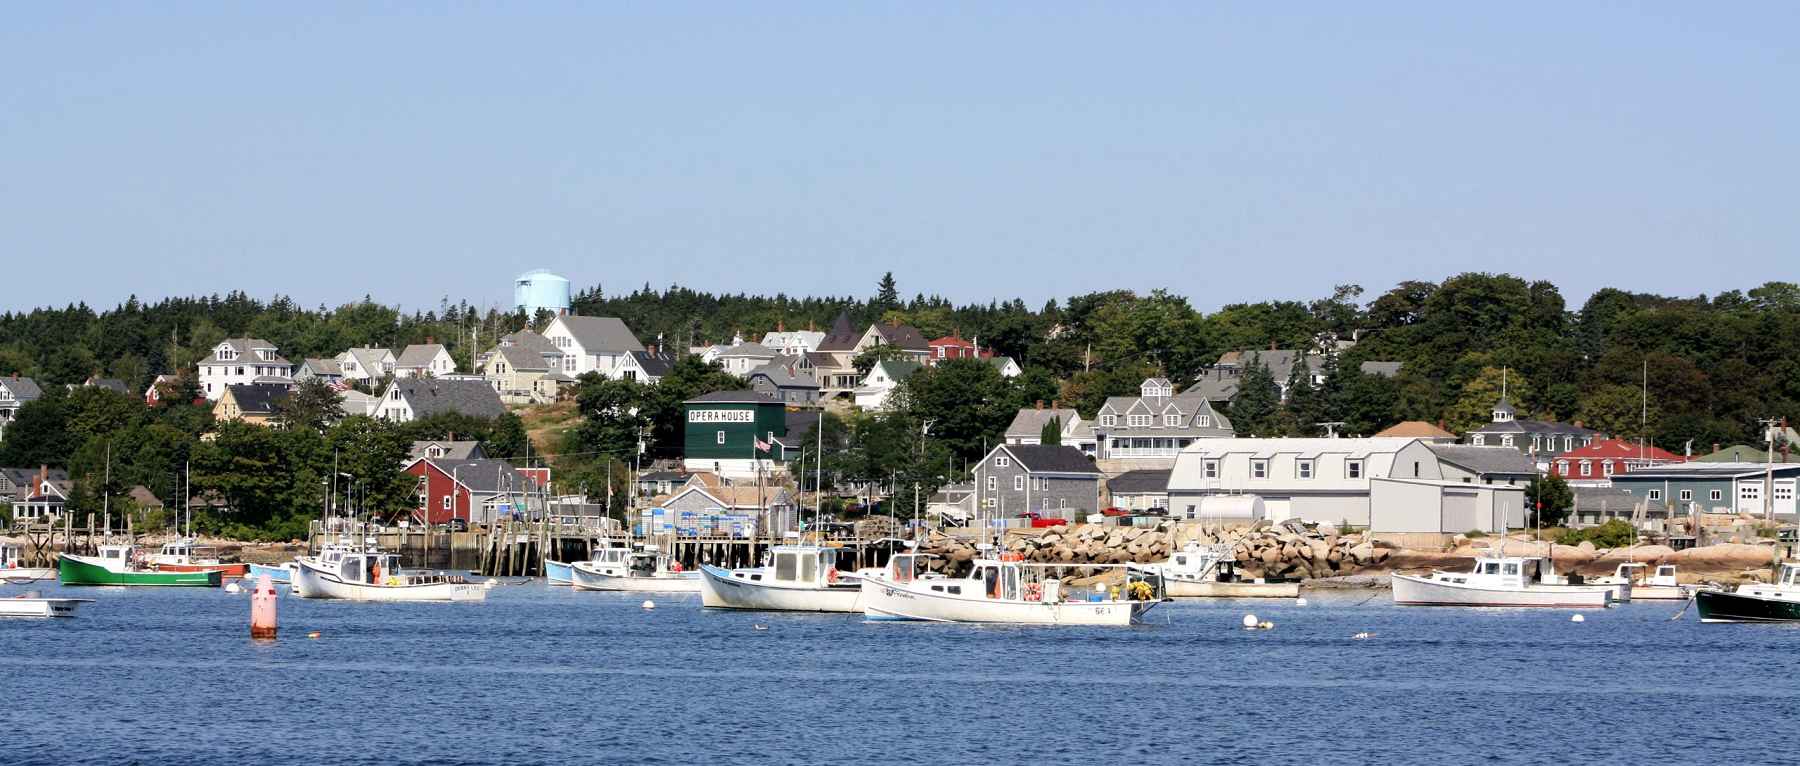 Midcoast Maine Harbor Summer - Photo Credit Elizabeth Jandreau